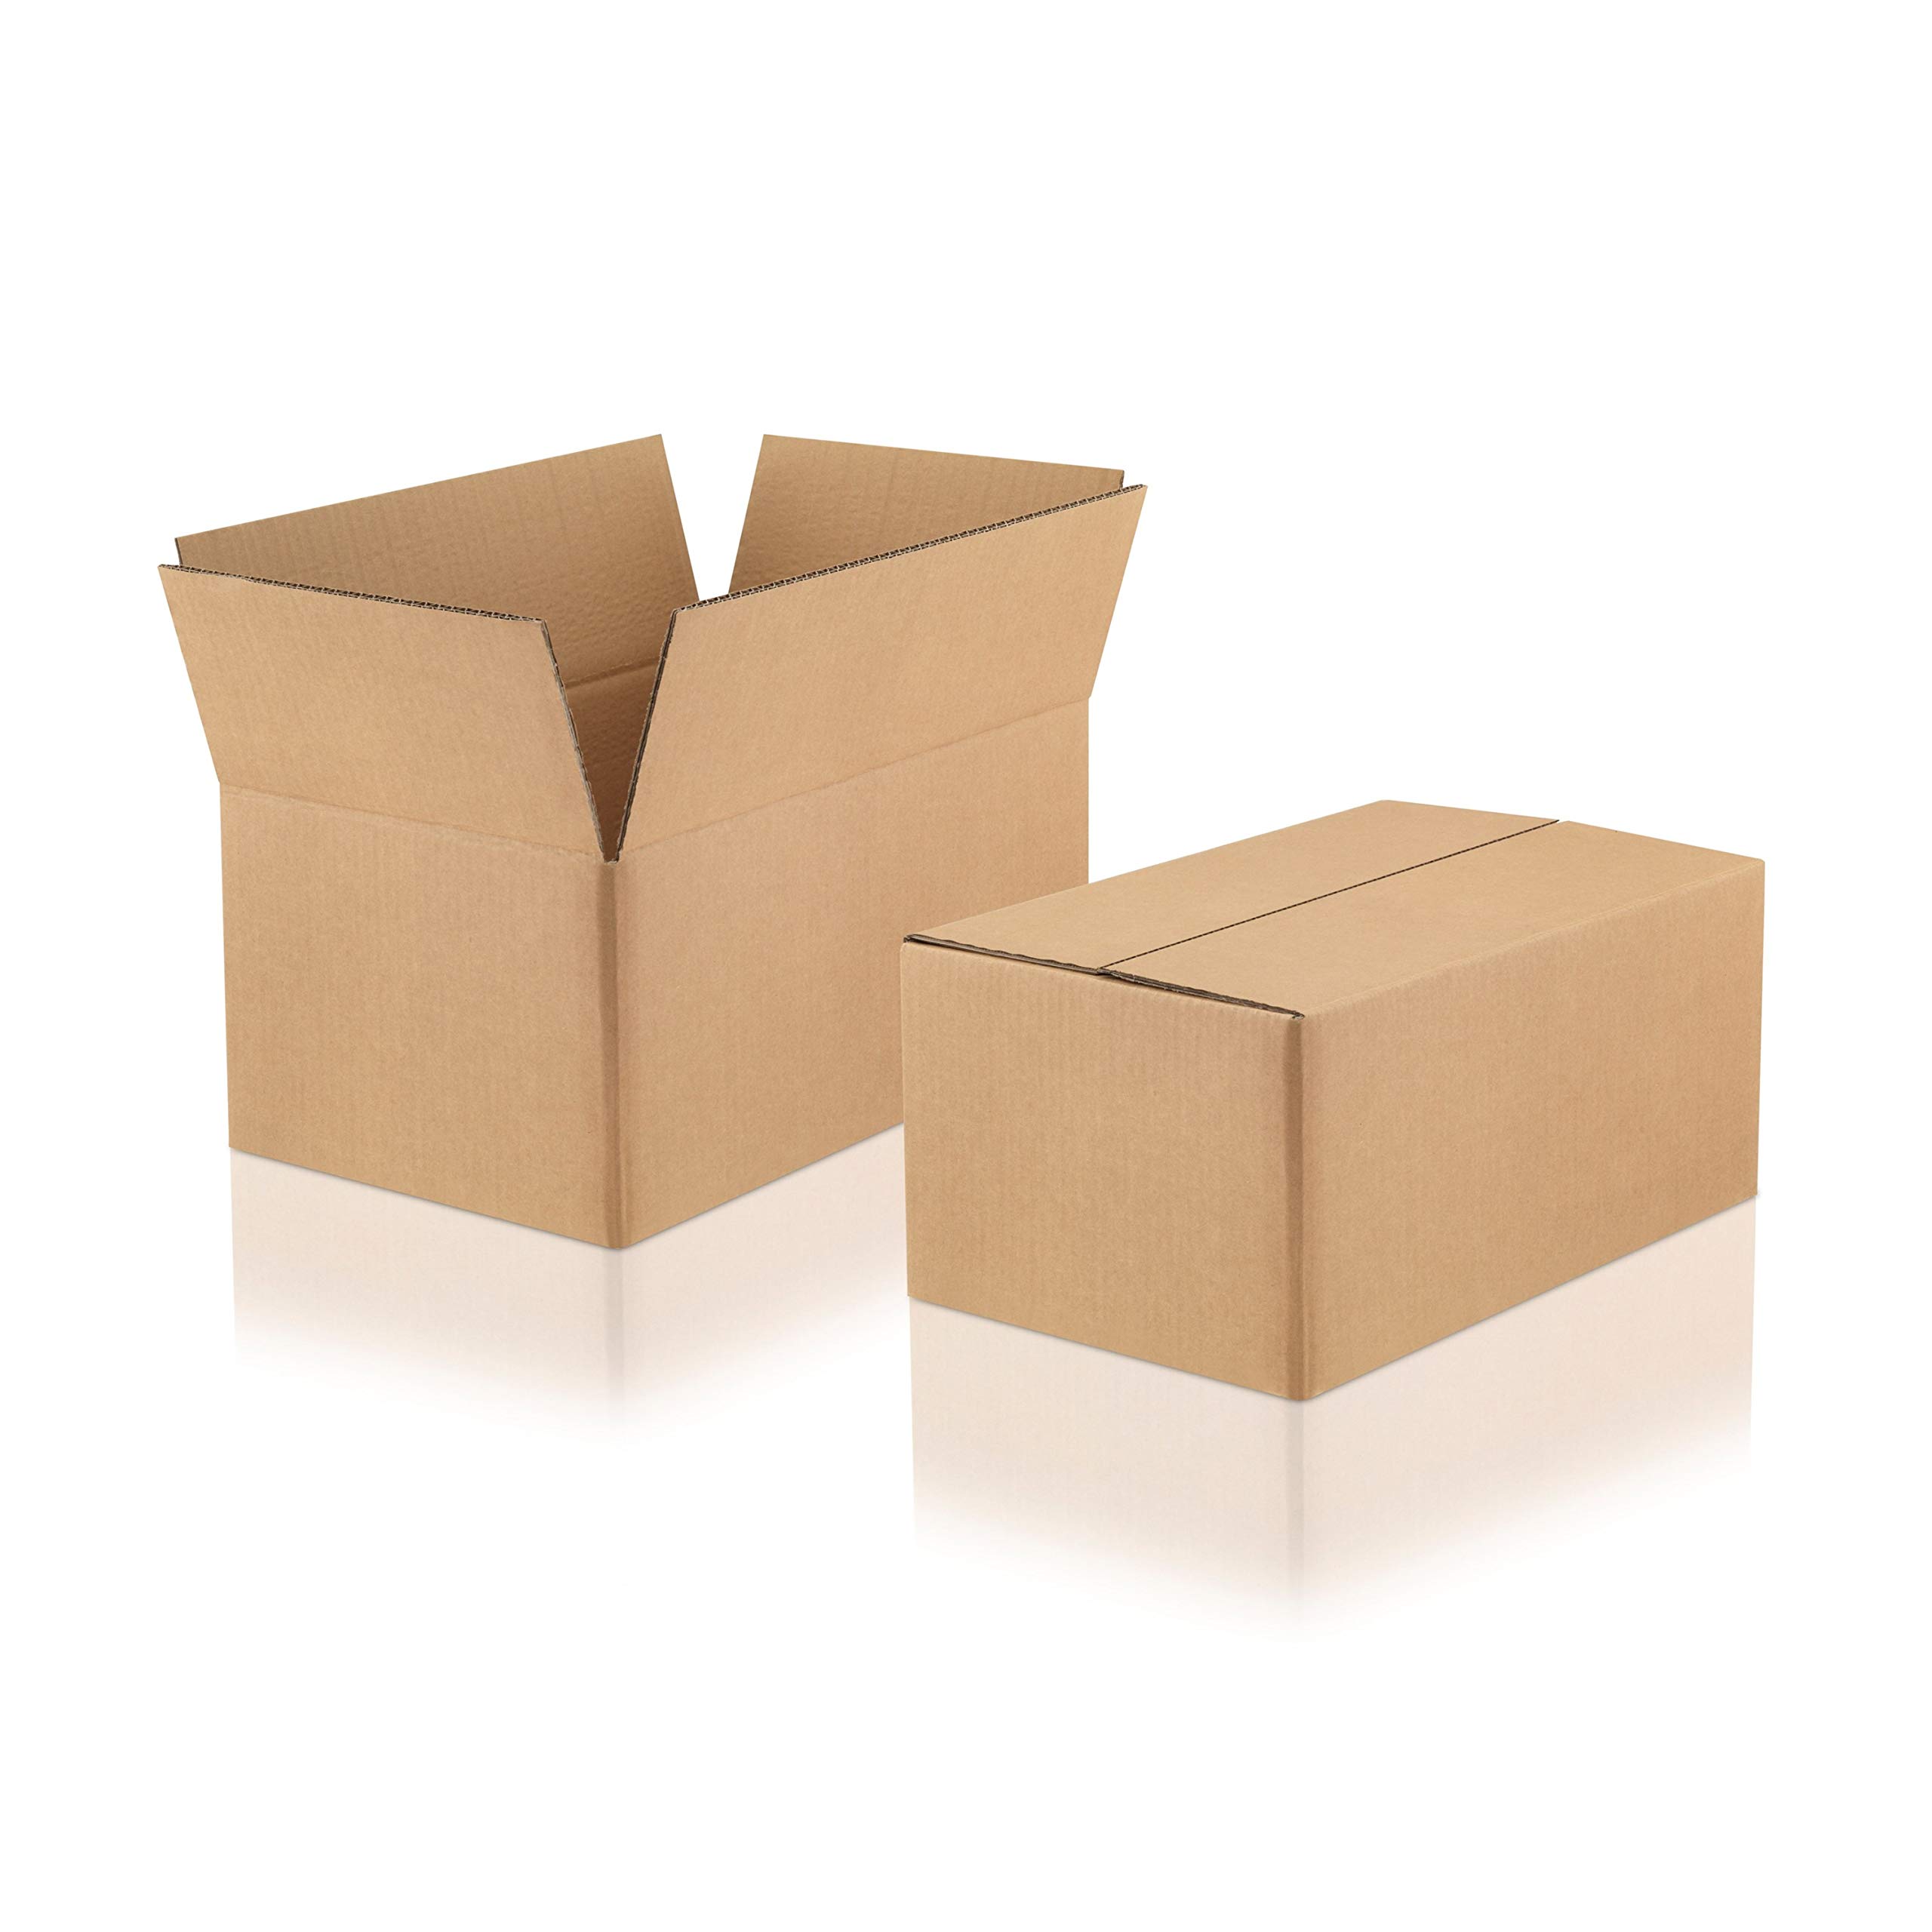 WPTrading - 10 Stück Versandkarton 2-wellig 380 x 280 x 300 mm Wellpappe (Nr. 2W-41D) Braun - Pappe Faltkarton für Warenversendung, Paket & Päckchen groß (L) - Karton Versandverpackung extra stabil